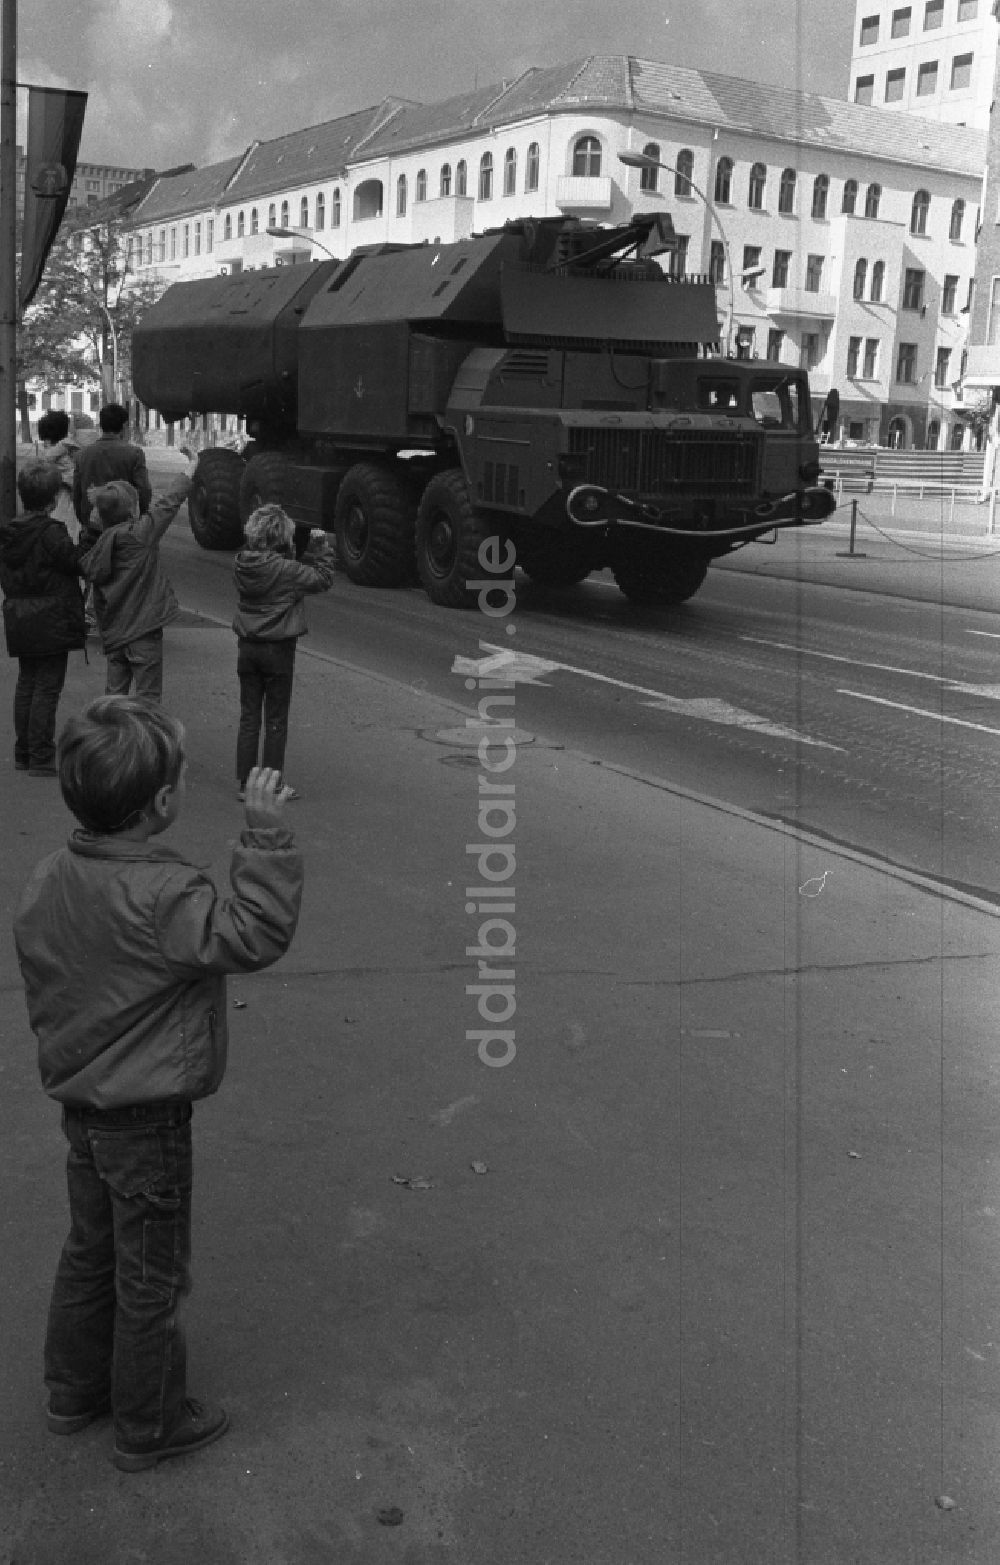 Berlin: Paradefahrt von Militärtechnik der NVA Nationale Volksarmee in Berlin in der DDR